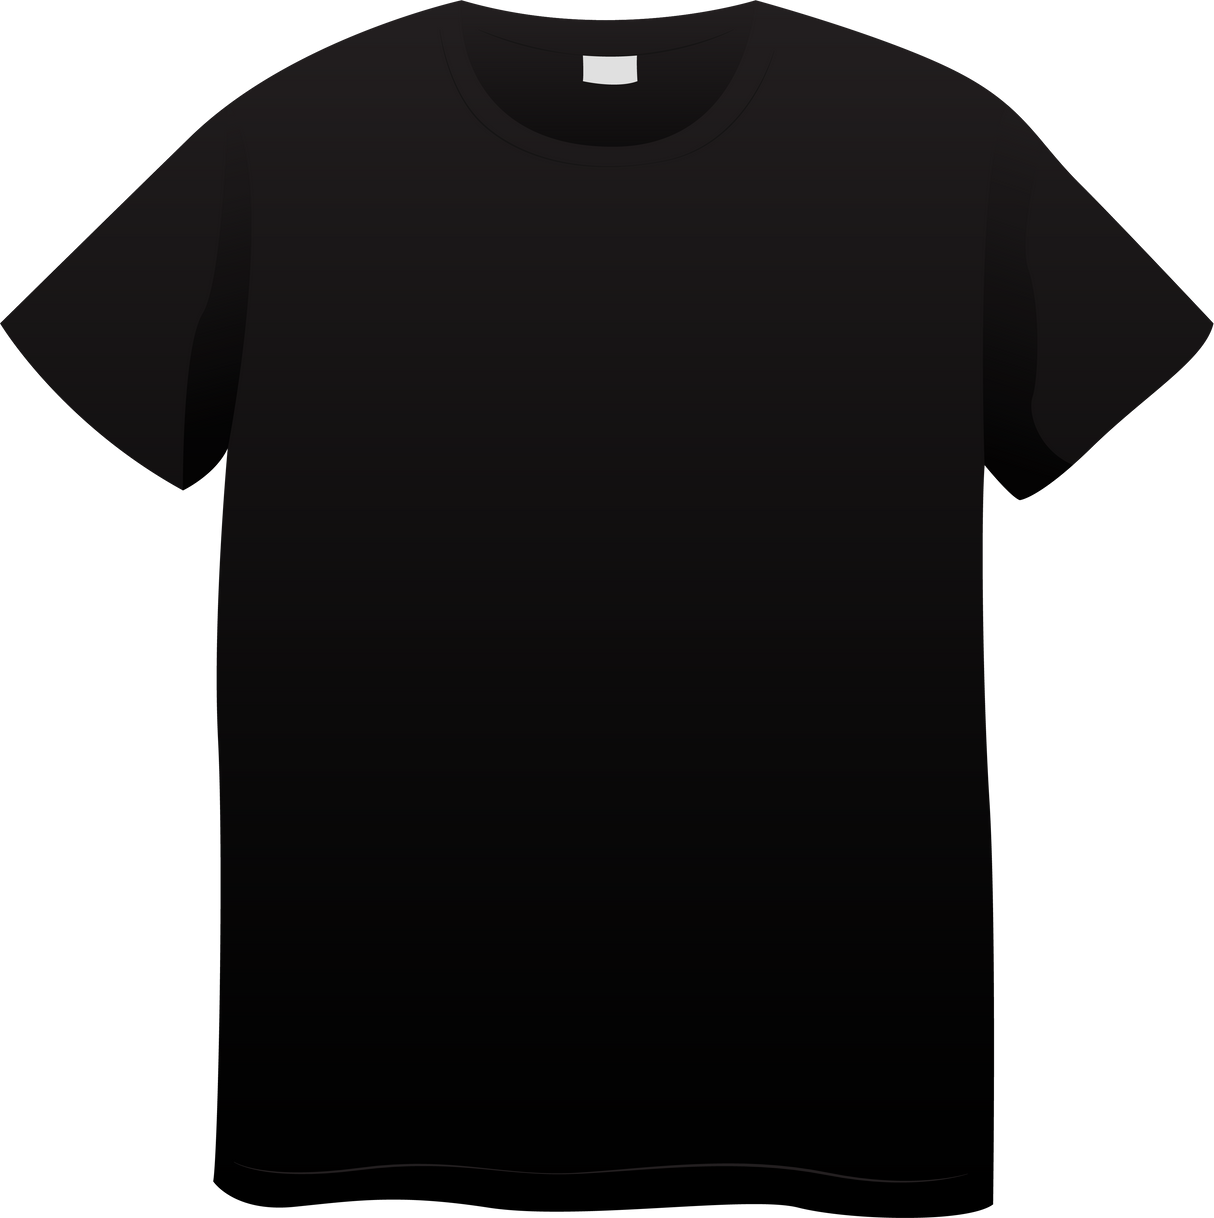 Black Plain T-shirt Mockup Design